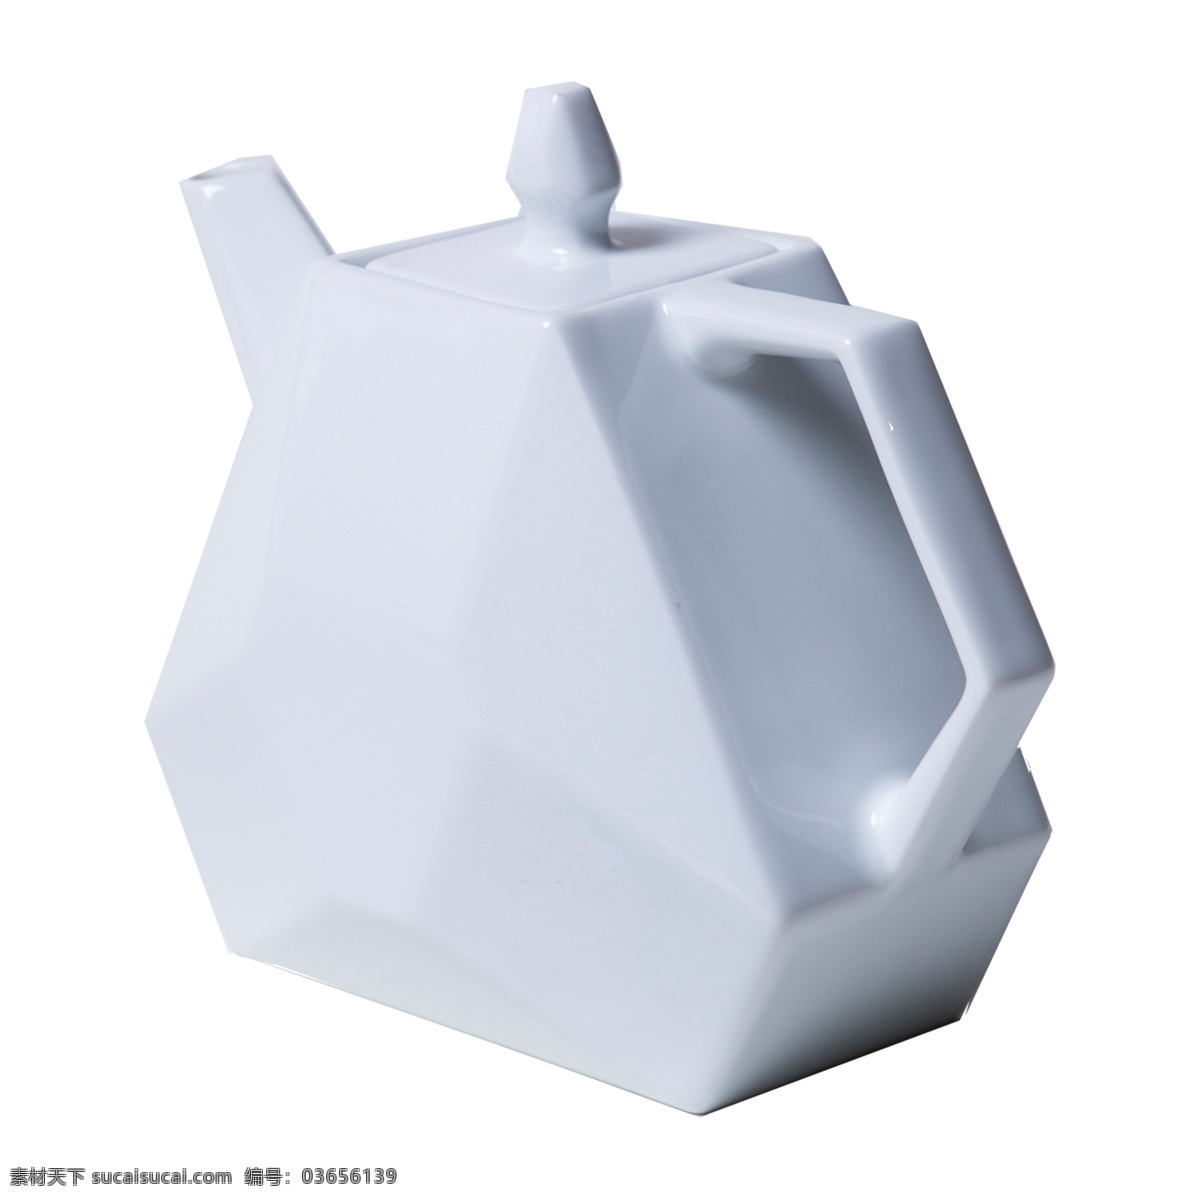 白色 倾斜 茶壶 元素 创意 几何 光泽 质感 喝的 瓶盖 圆润 壶嘴 立体 真实 喝水 容器